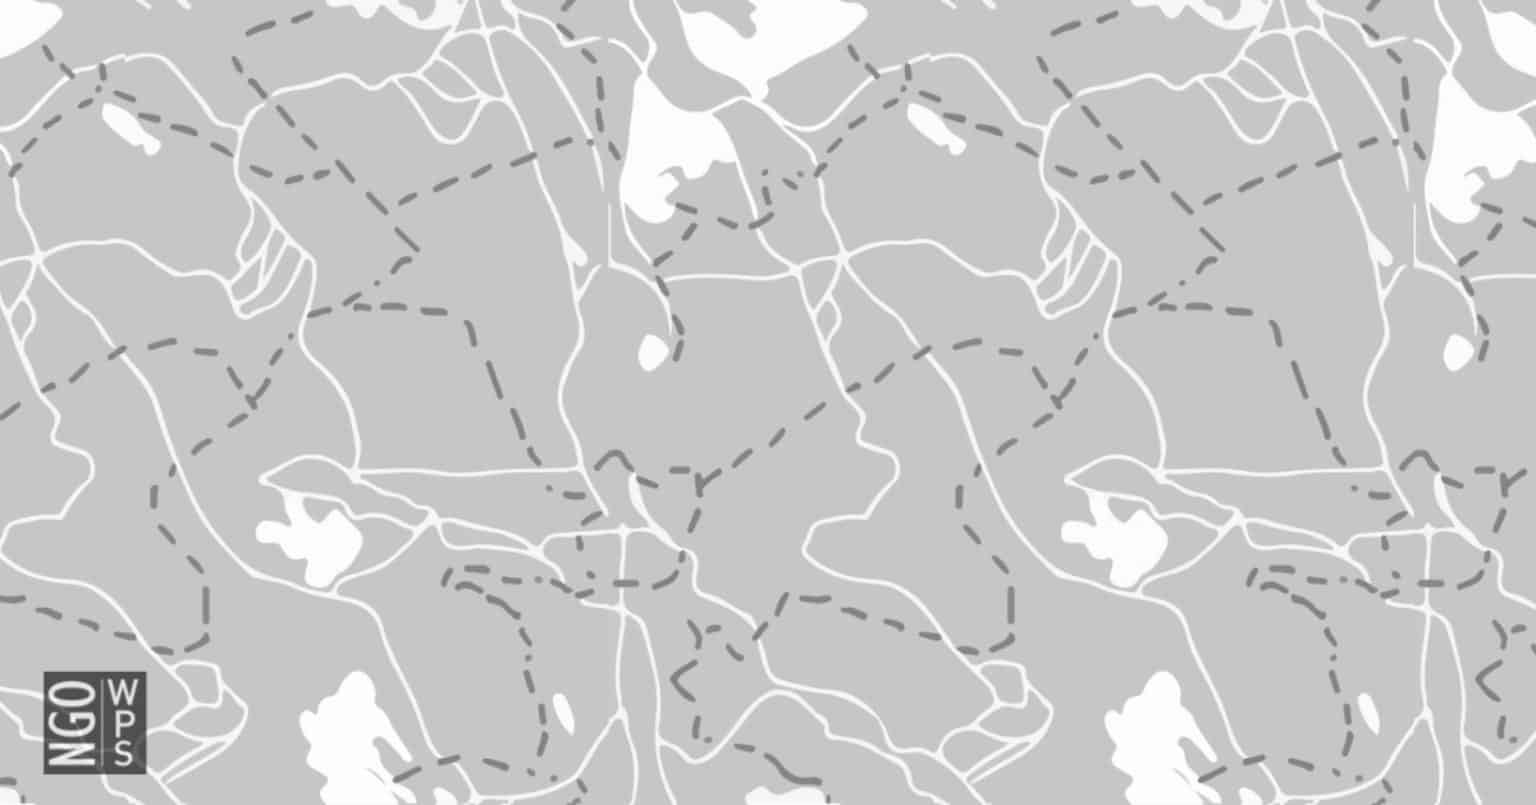 Pattern Ngowg Map 3 1 1536x805 